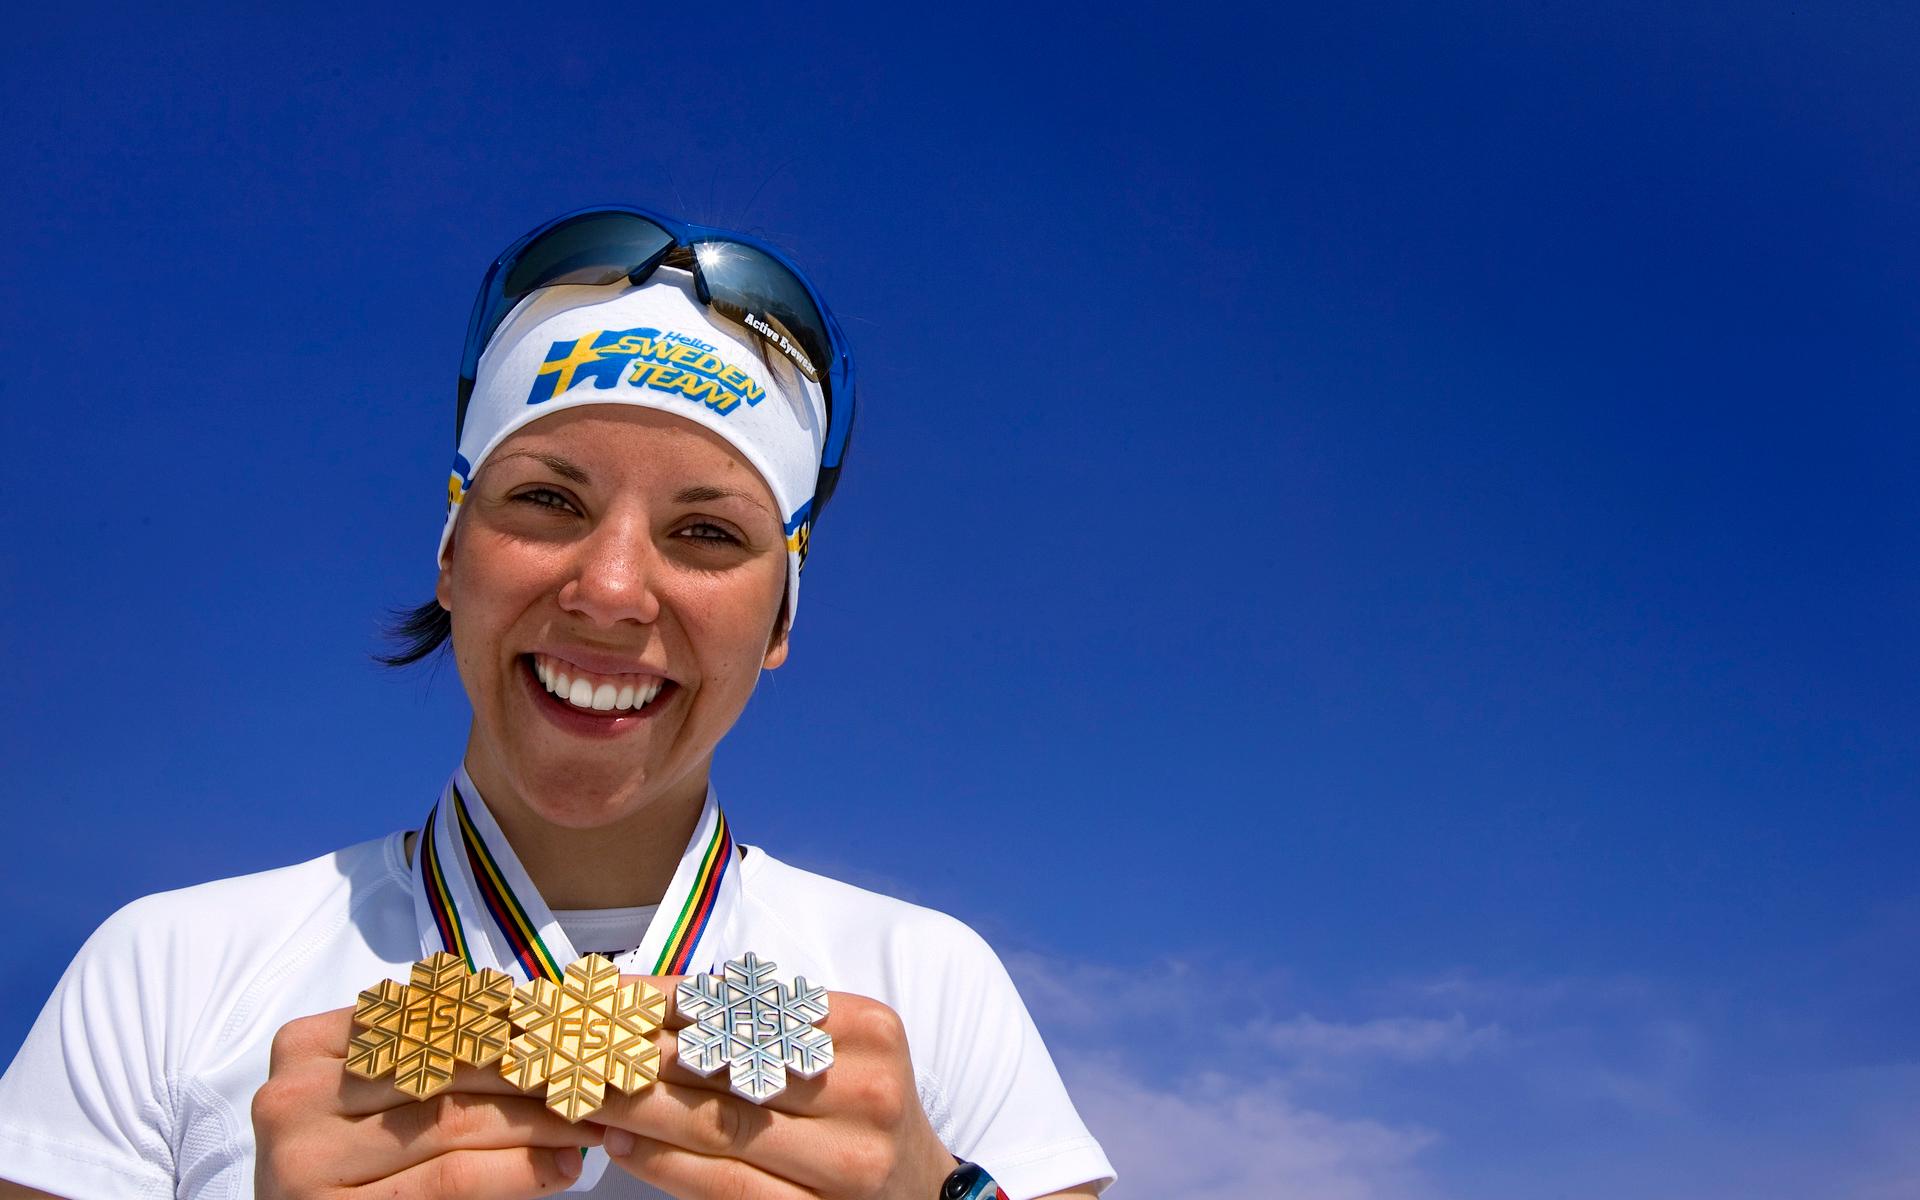 Redan som junior var Charlotte Kalla, som är född i lilla Tärendö i Pajala kommun, framstående. I februari 2006 tog hon sitt första guld i junior-VM. Hon vann skiathlon på 10 kilometer. Ett år senare tog hon dubbla guld och dubbla silver vid junior-VM i Tarvisio. Här syns hon visa upp sina tre individuella medaljer från mästerskapet 2007. 